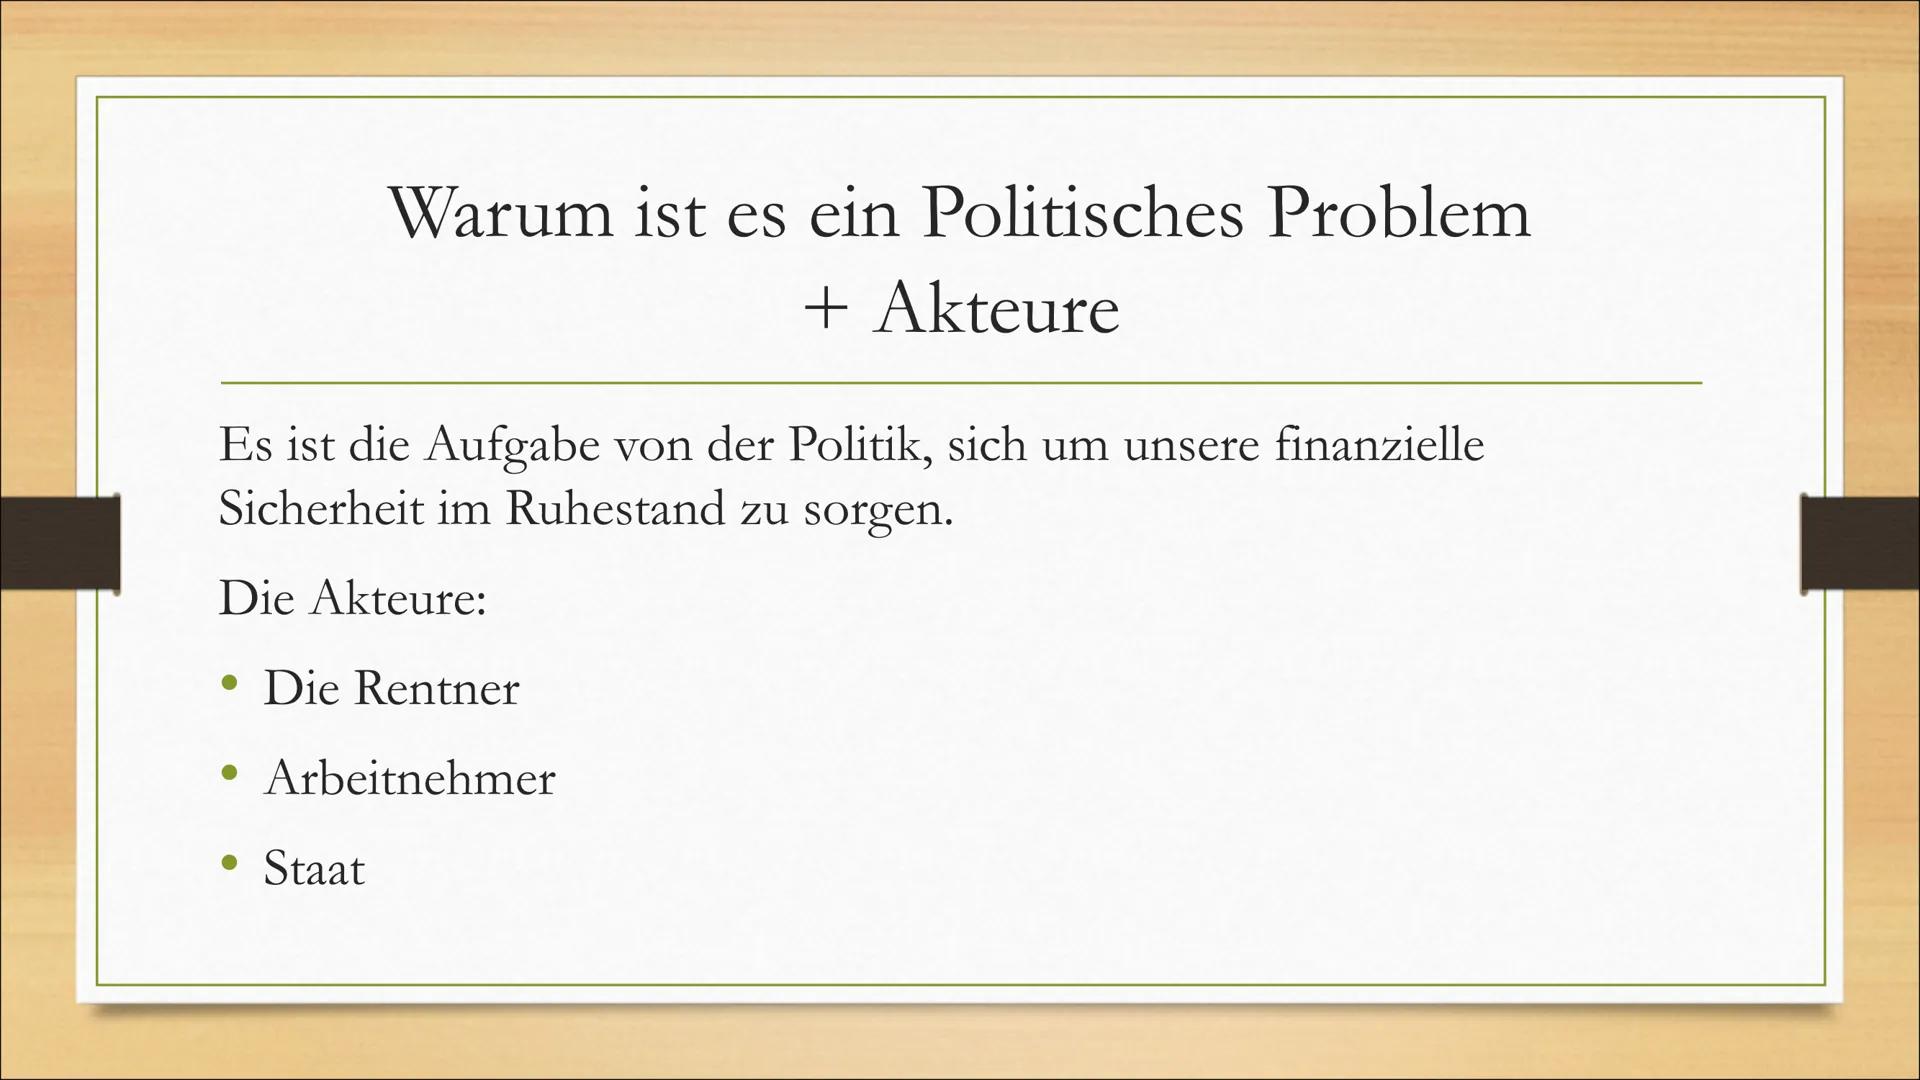 Das deutsche gesetzliche
Rentensystem
Warum es zu scheitern droht • Was ist die gesetzliche Rentenversicherung?
• Warum ist es ein politisch